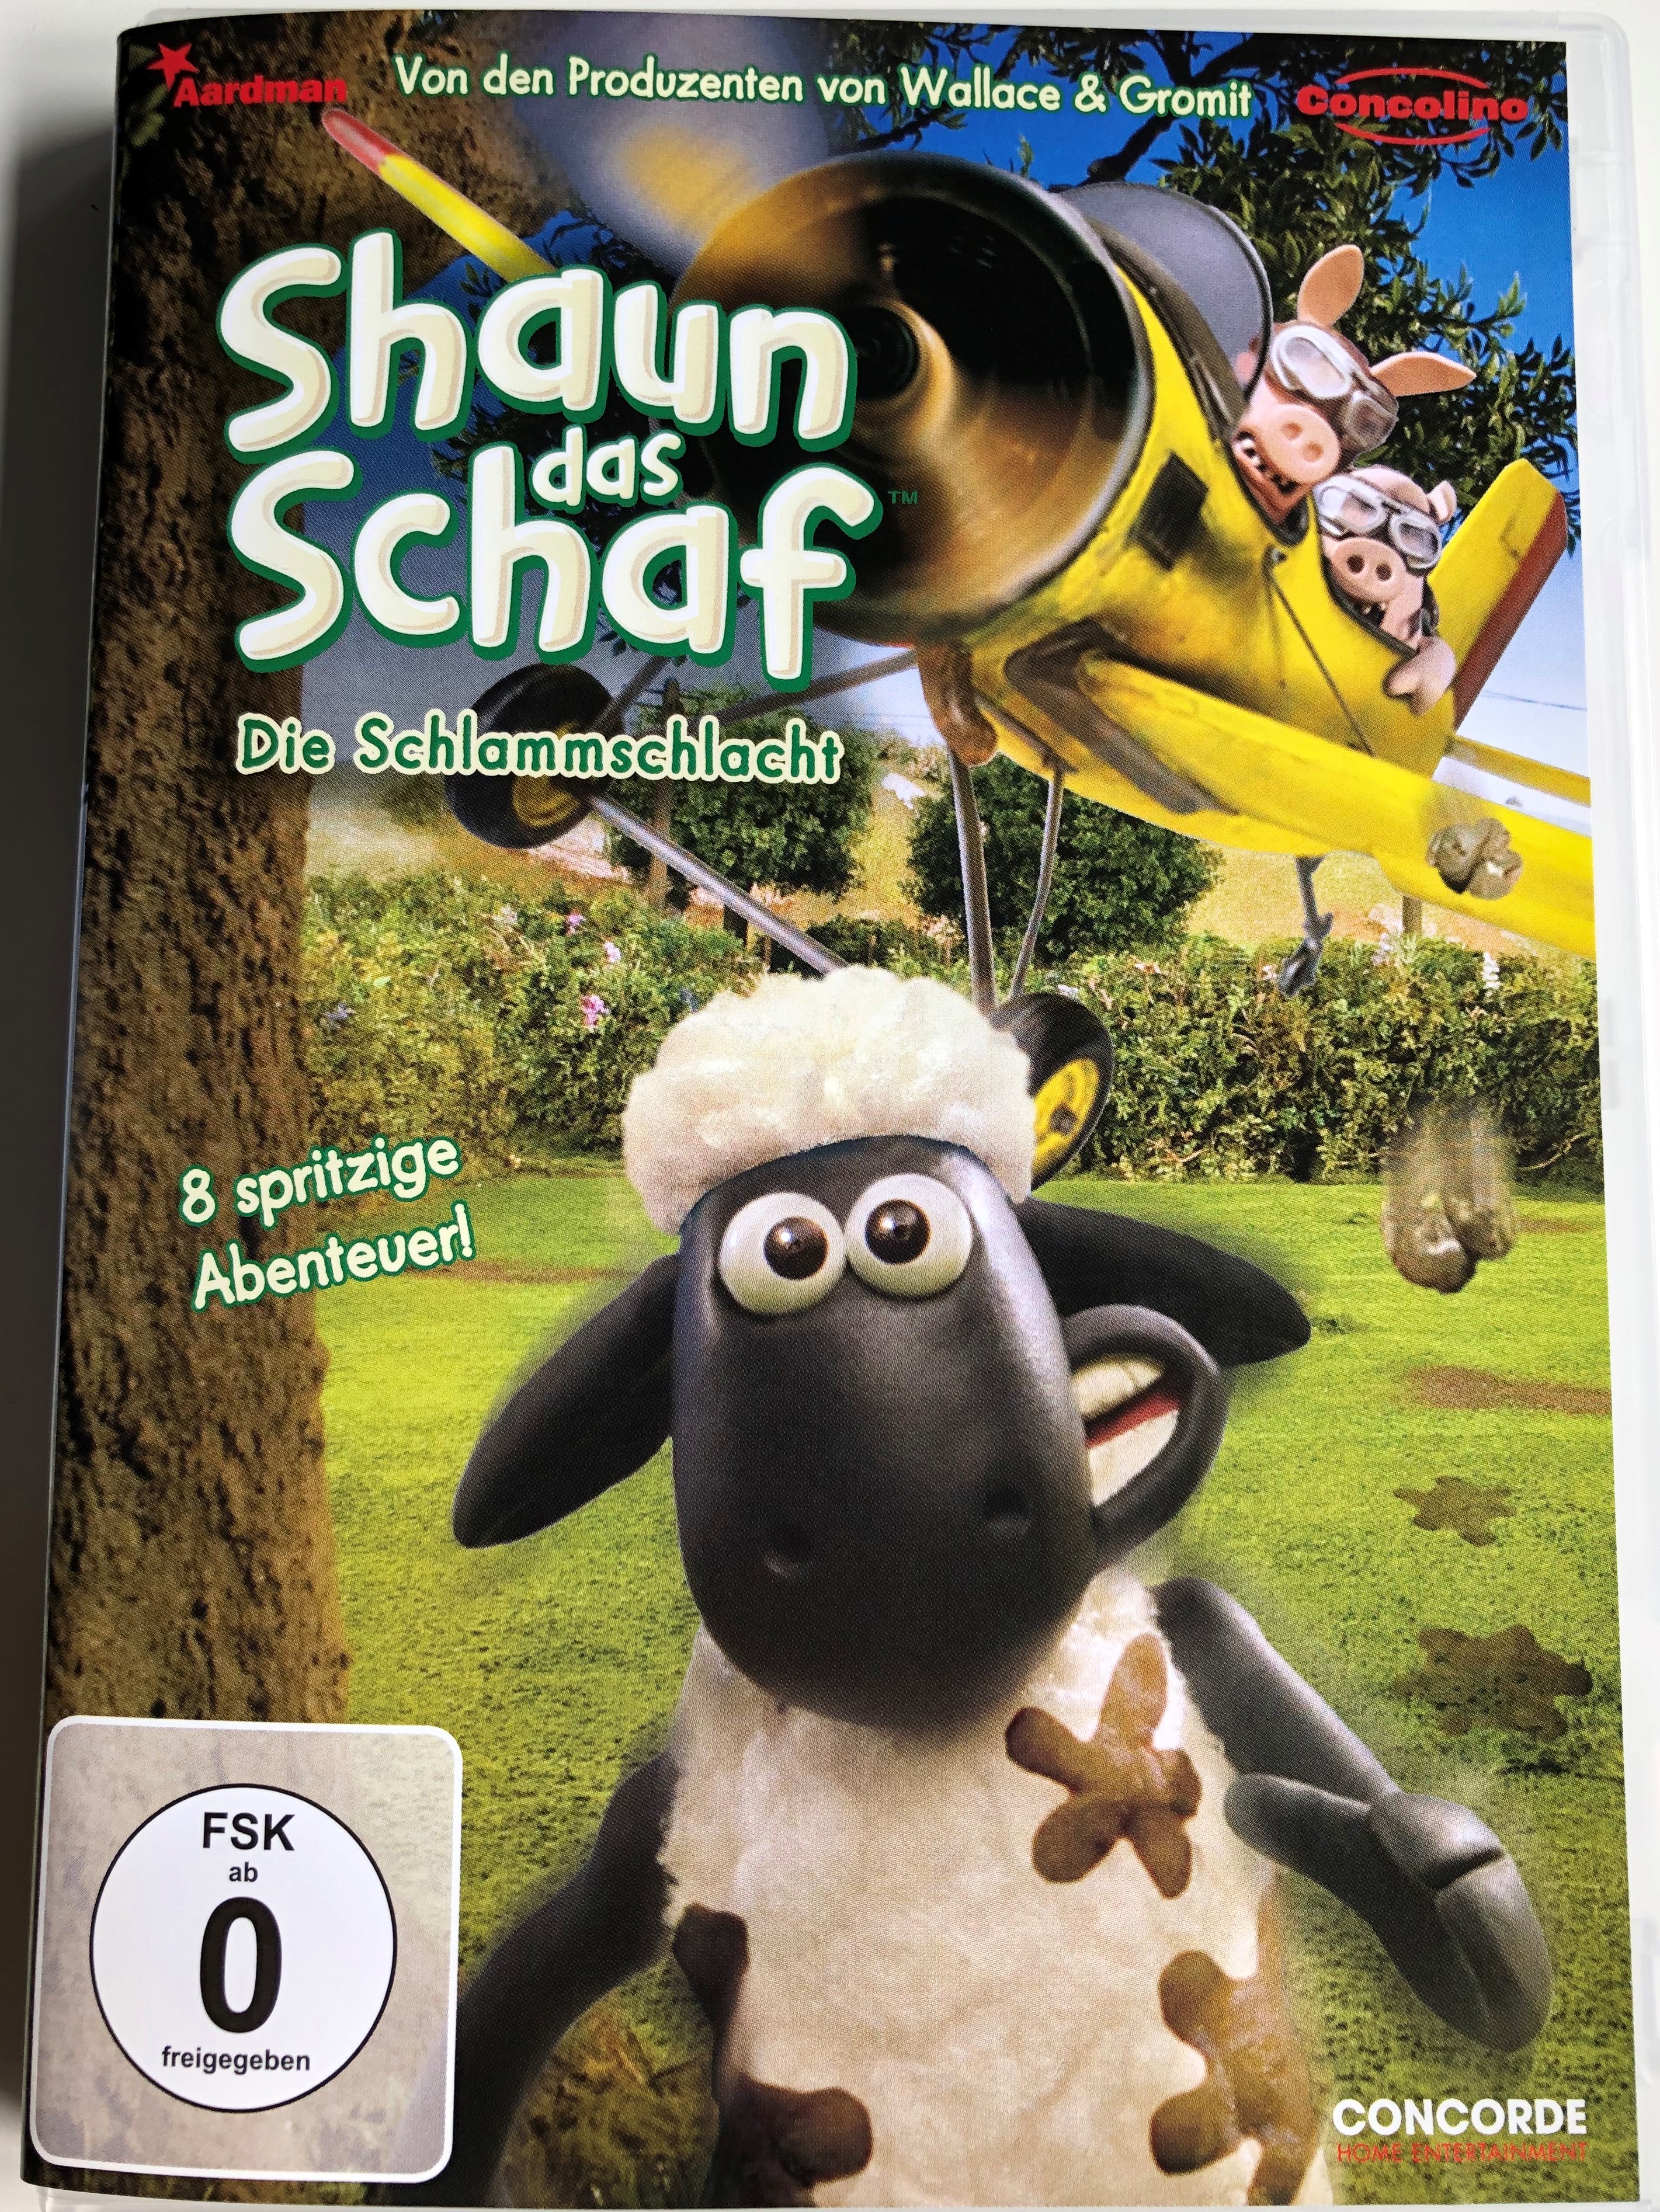 shaun-the-sheep-dvd-2010-shaun-das-schaf-die-schlammschlacht-1.jpg